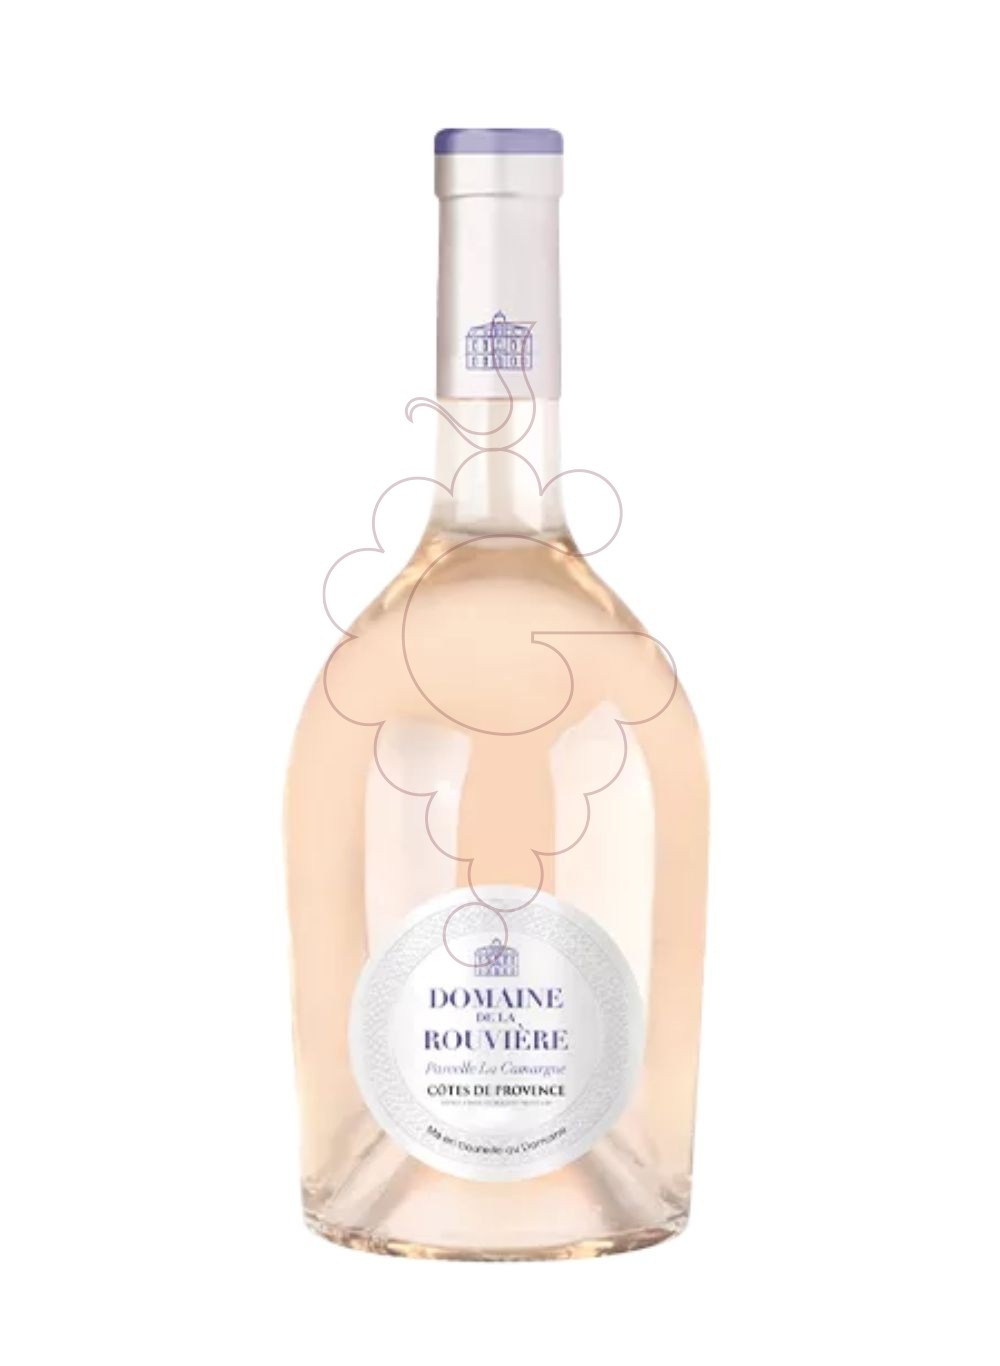 Foto Domaine bouviere provence rose vi rosat